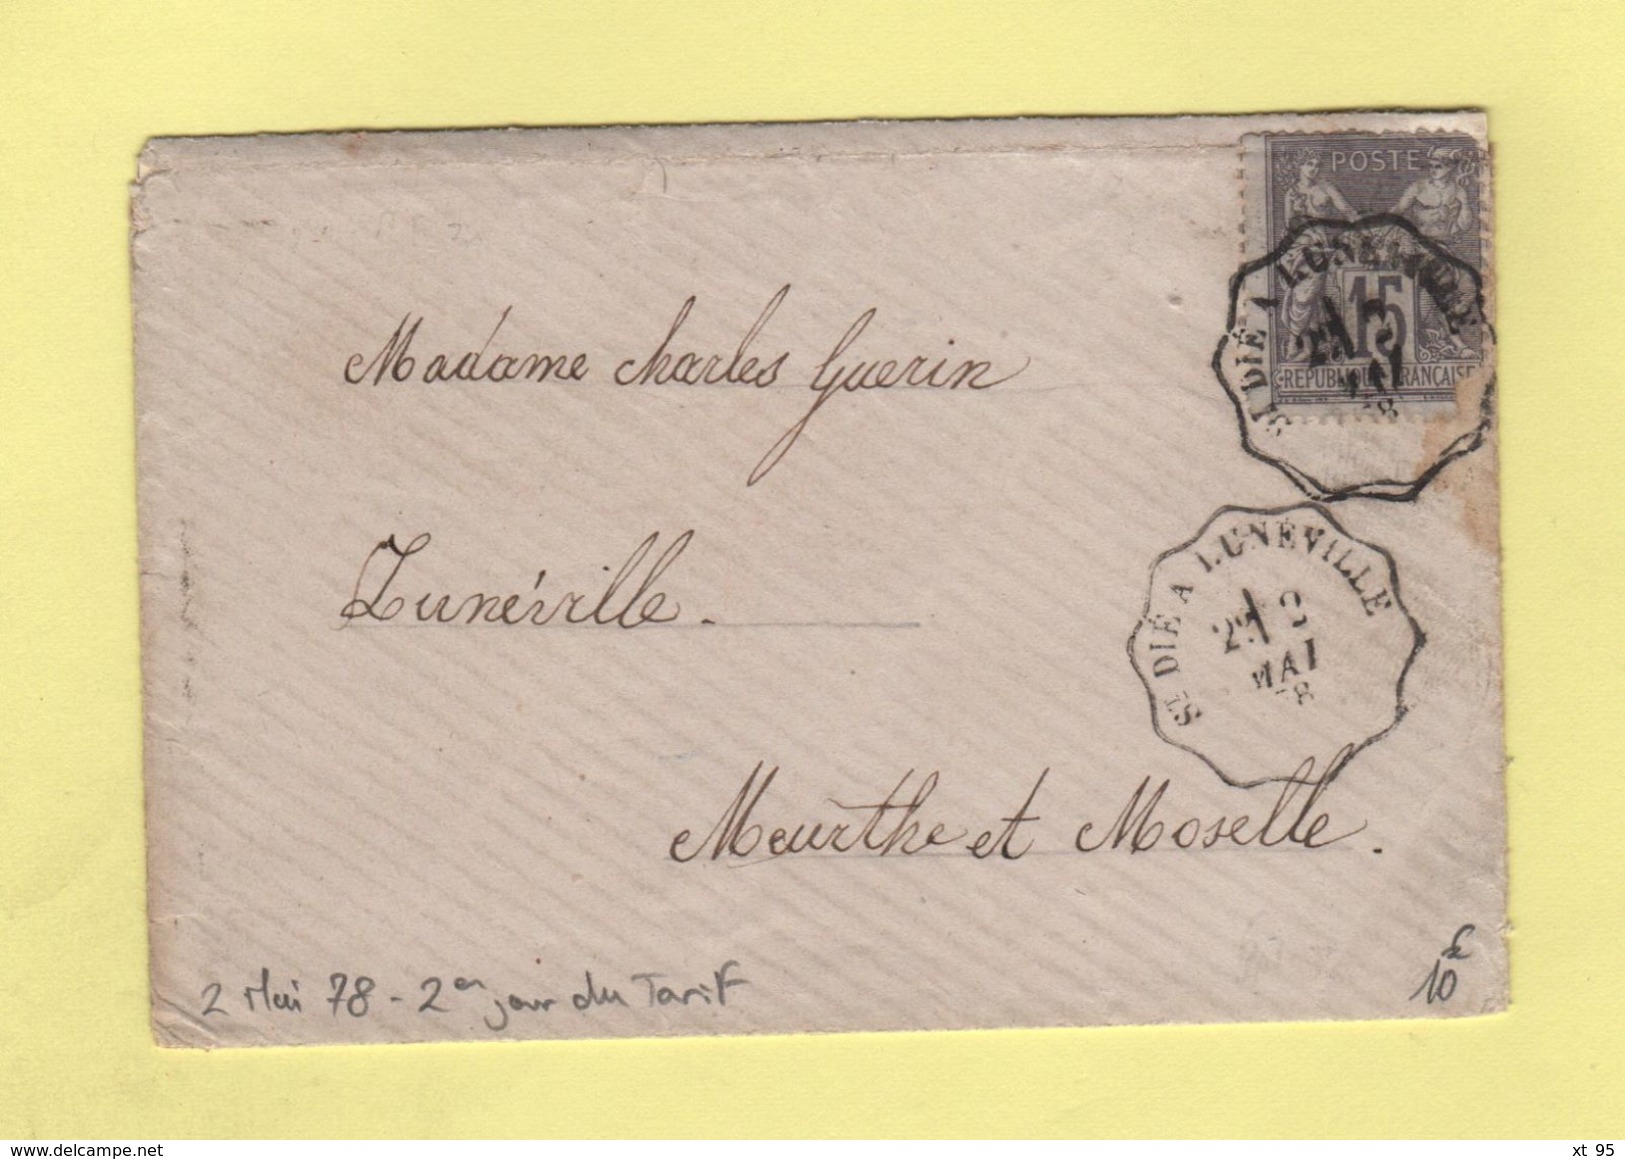 Convoyeur - St Die A Luneville - 2 Mai 1878 - 2eme Jour Du Tarif De La Lettre à 15c - Bahnpost